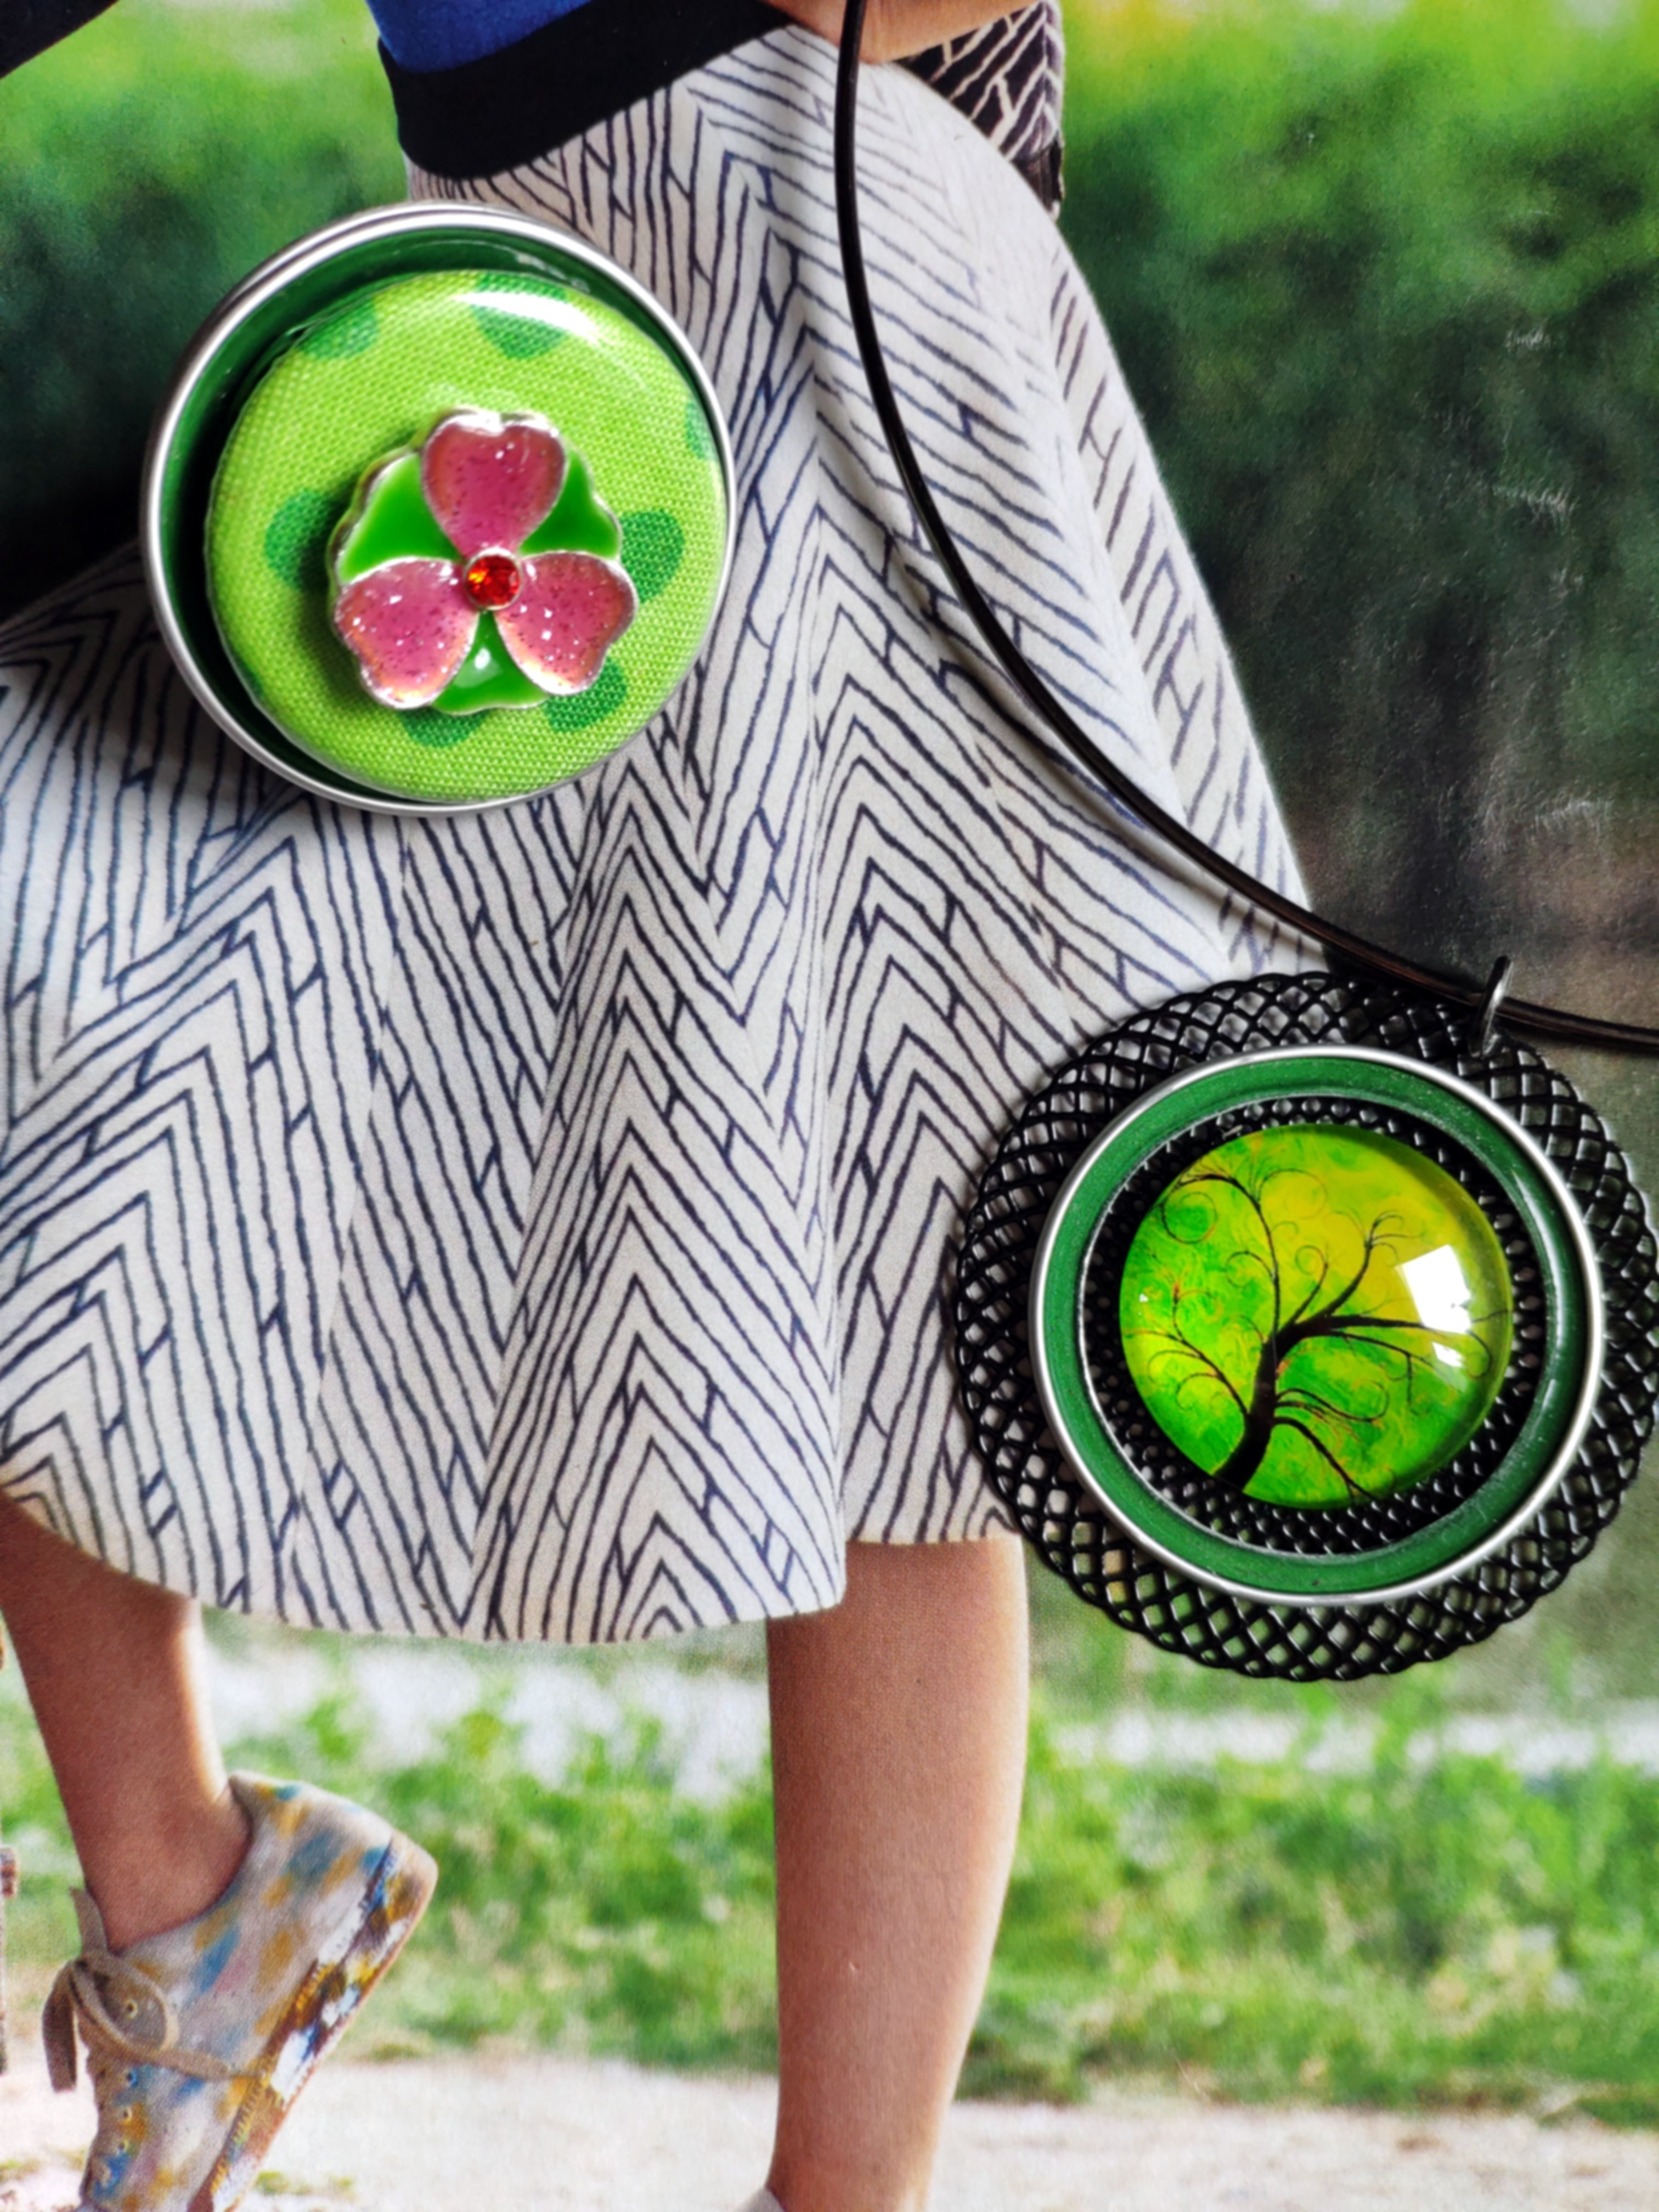 Offre cadeau duo,  pendentif réalisé avec capsule de café et cabochon de verre motif arbre de vie , vendu avec tour de cou, associé à une bague capsule réglable (3.5cm)emplie de gaieté!